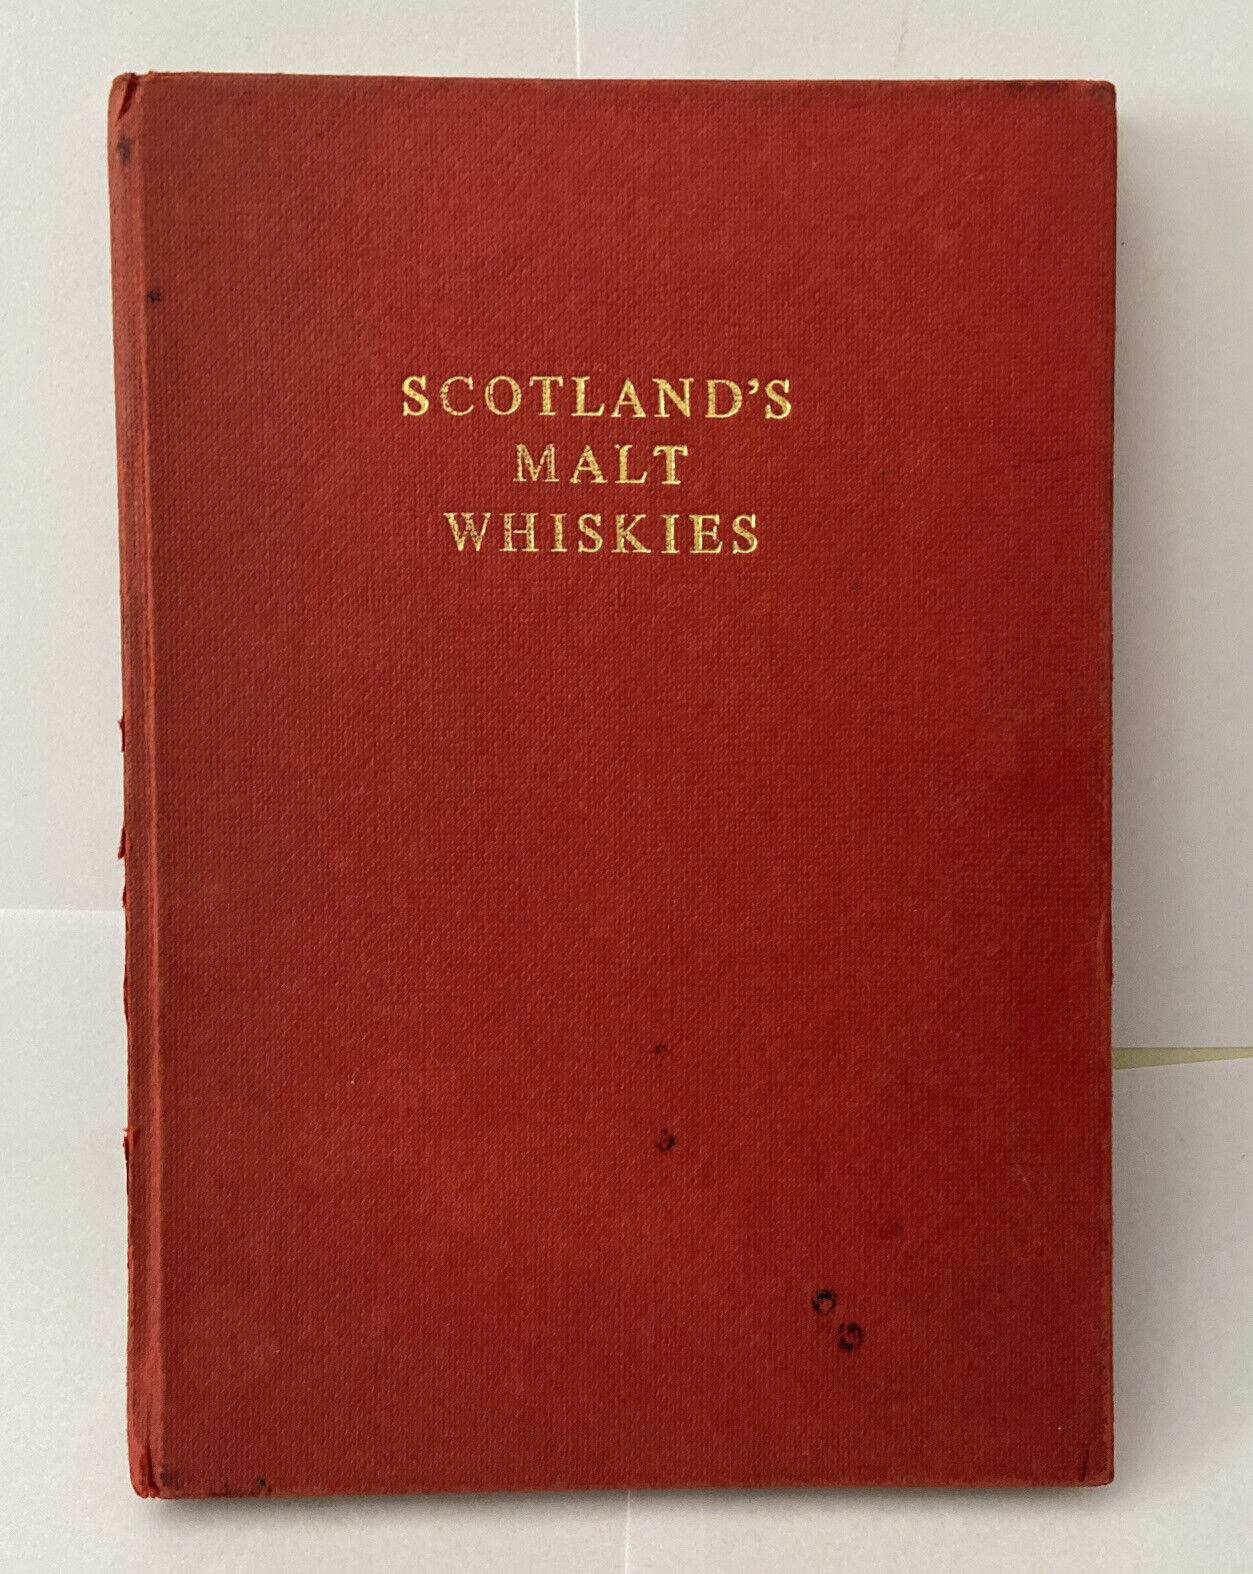 Scotland’s Malt Whiskies